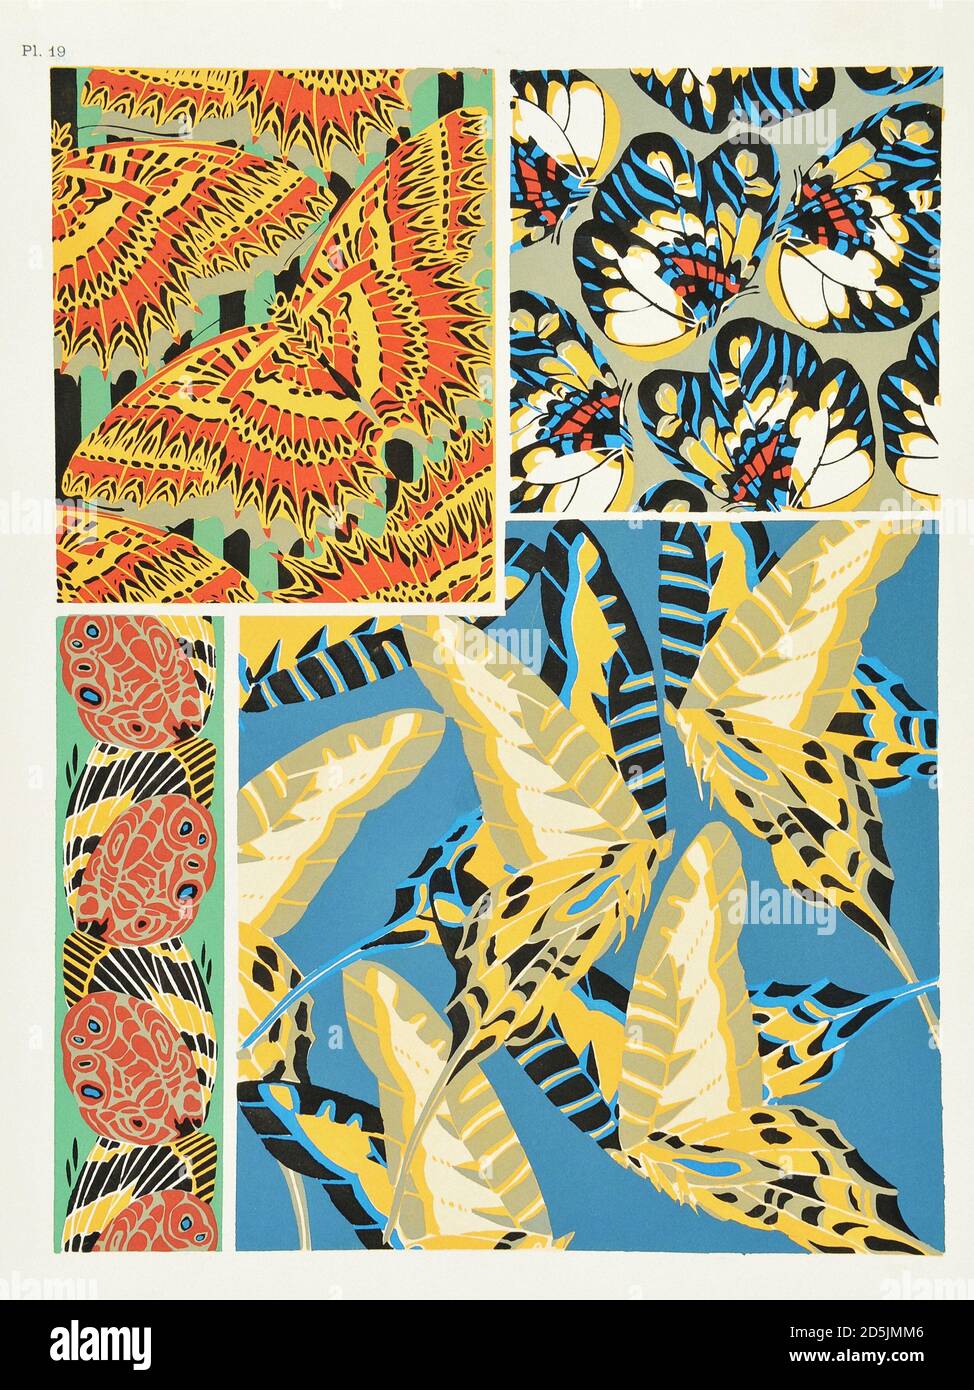 Farfalle: Venti pannelli fototype colorati al modello. PL XIX Tratto da un libro di Emile-Allain Segy (1877-1951). Parigi, Francia. 1925 Foto Stock